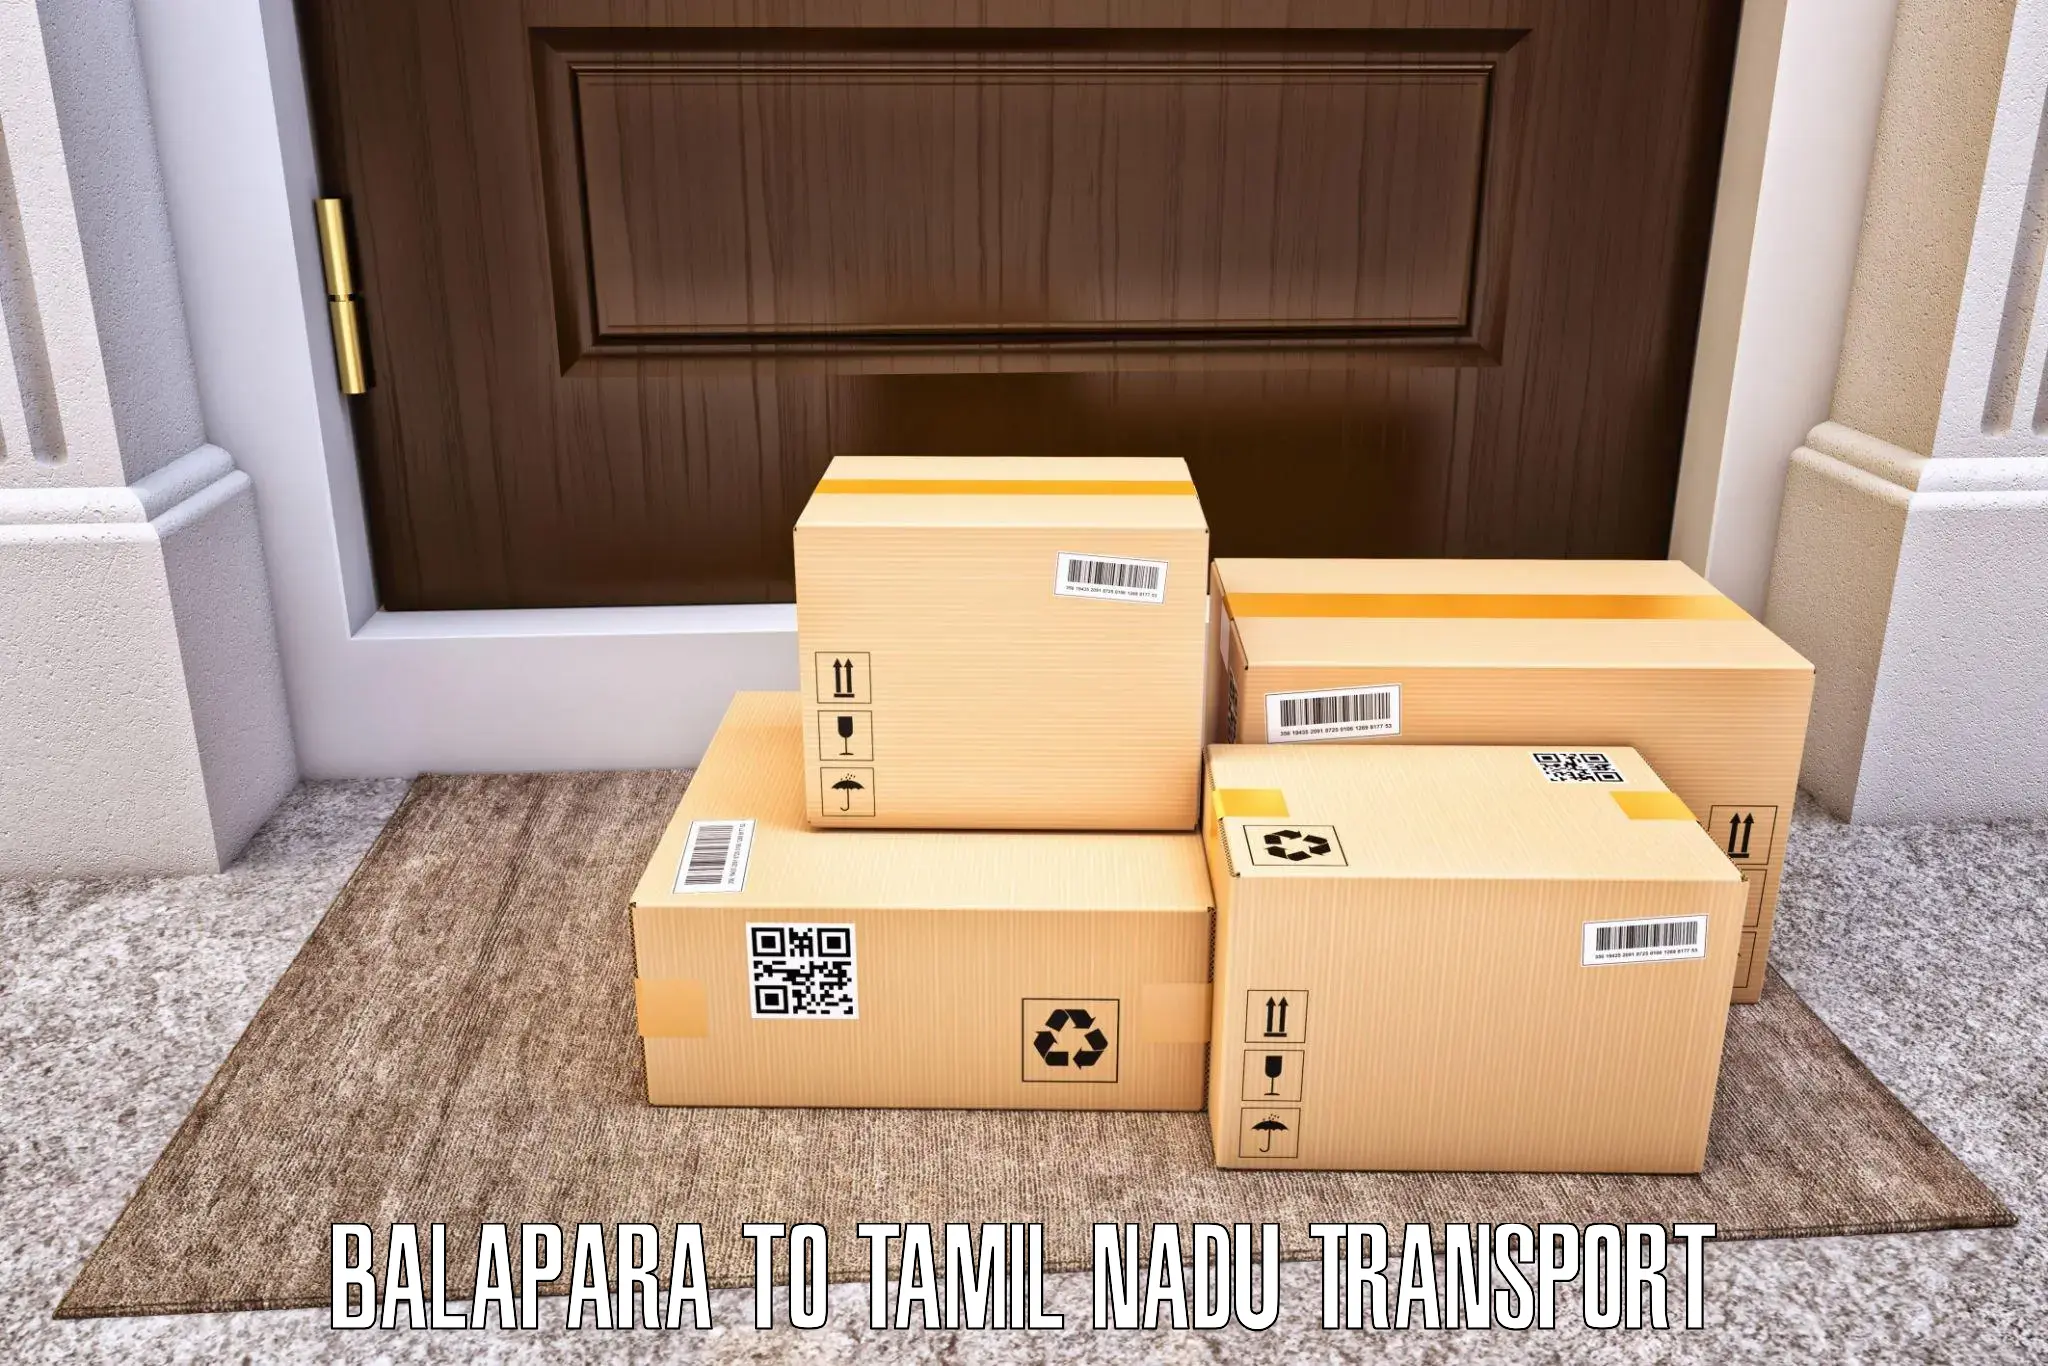 Land transport services Balapara to Ambur